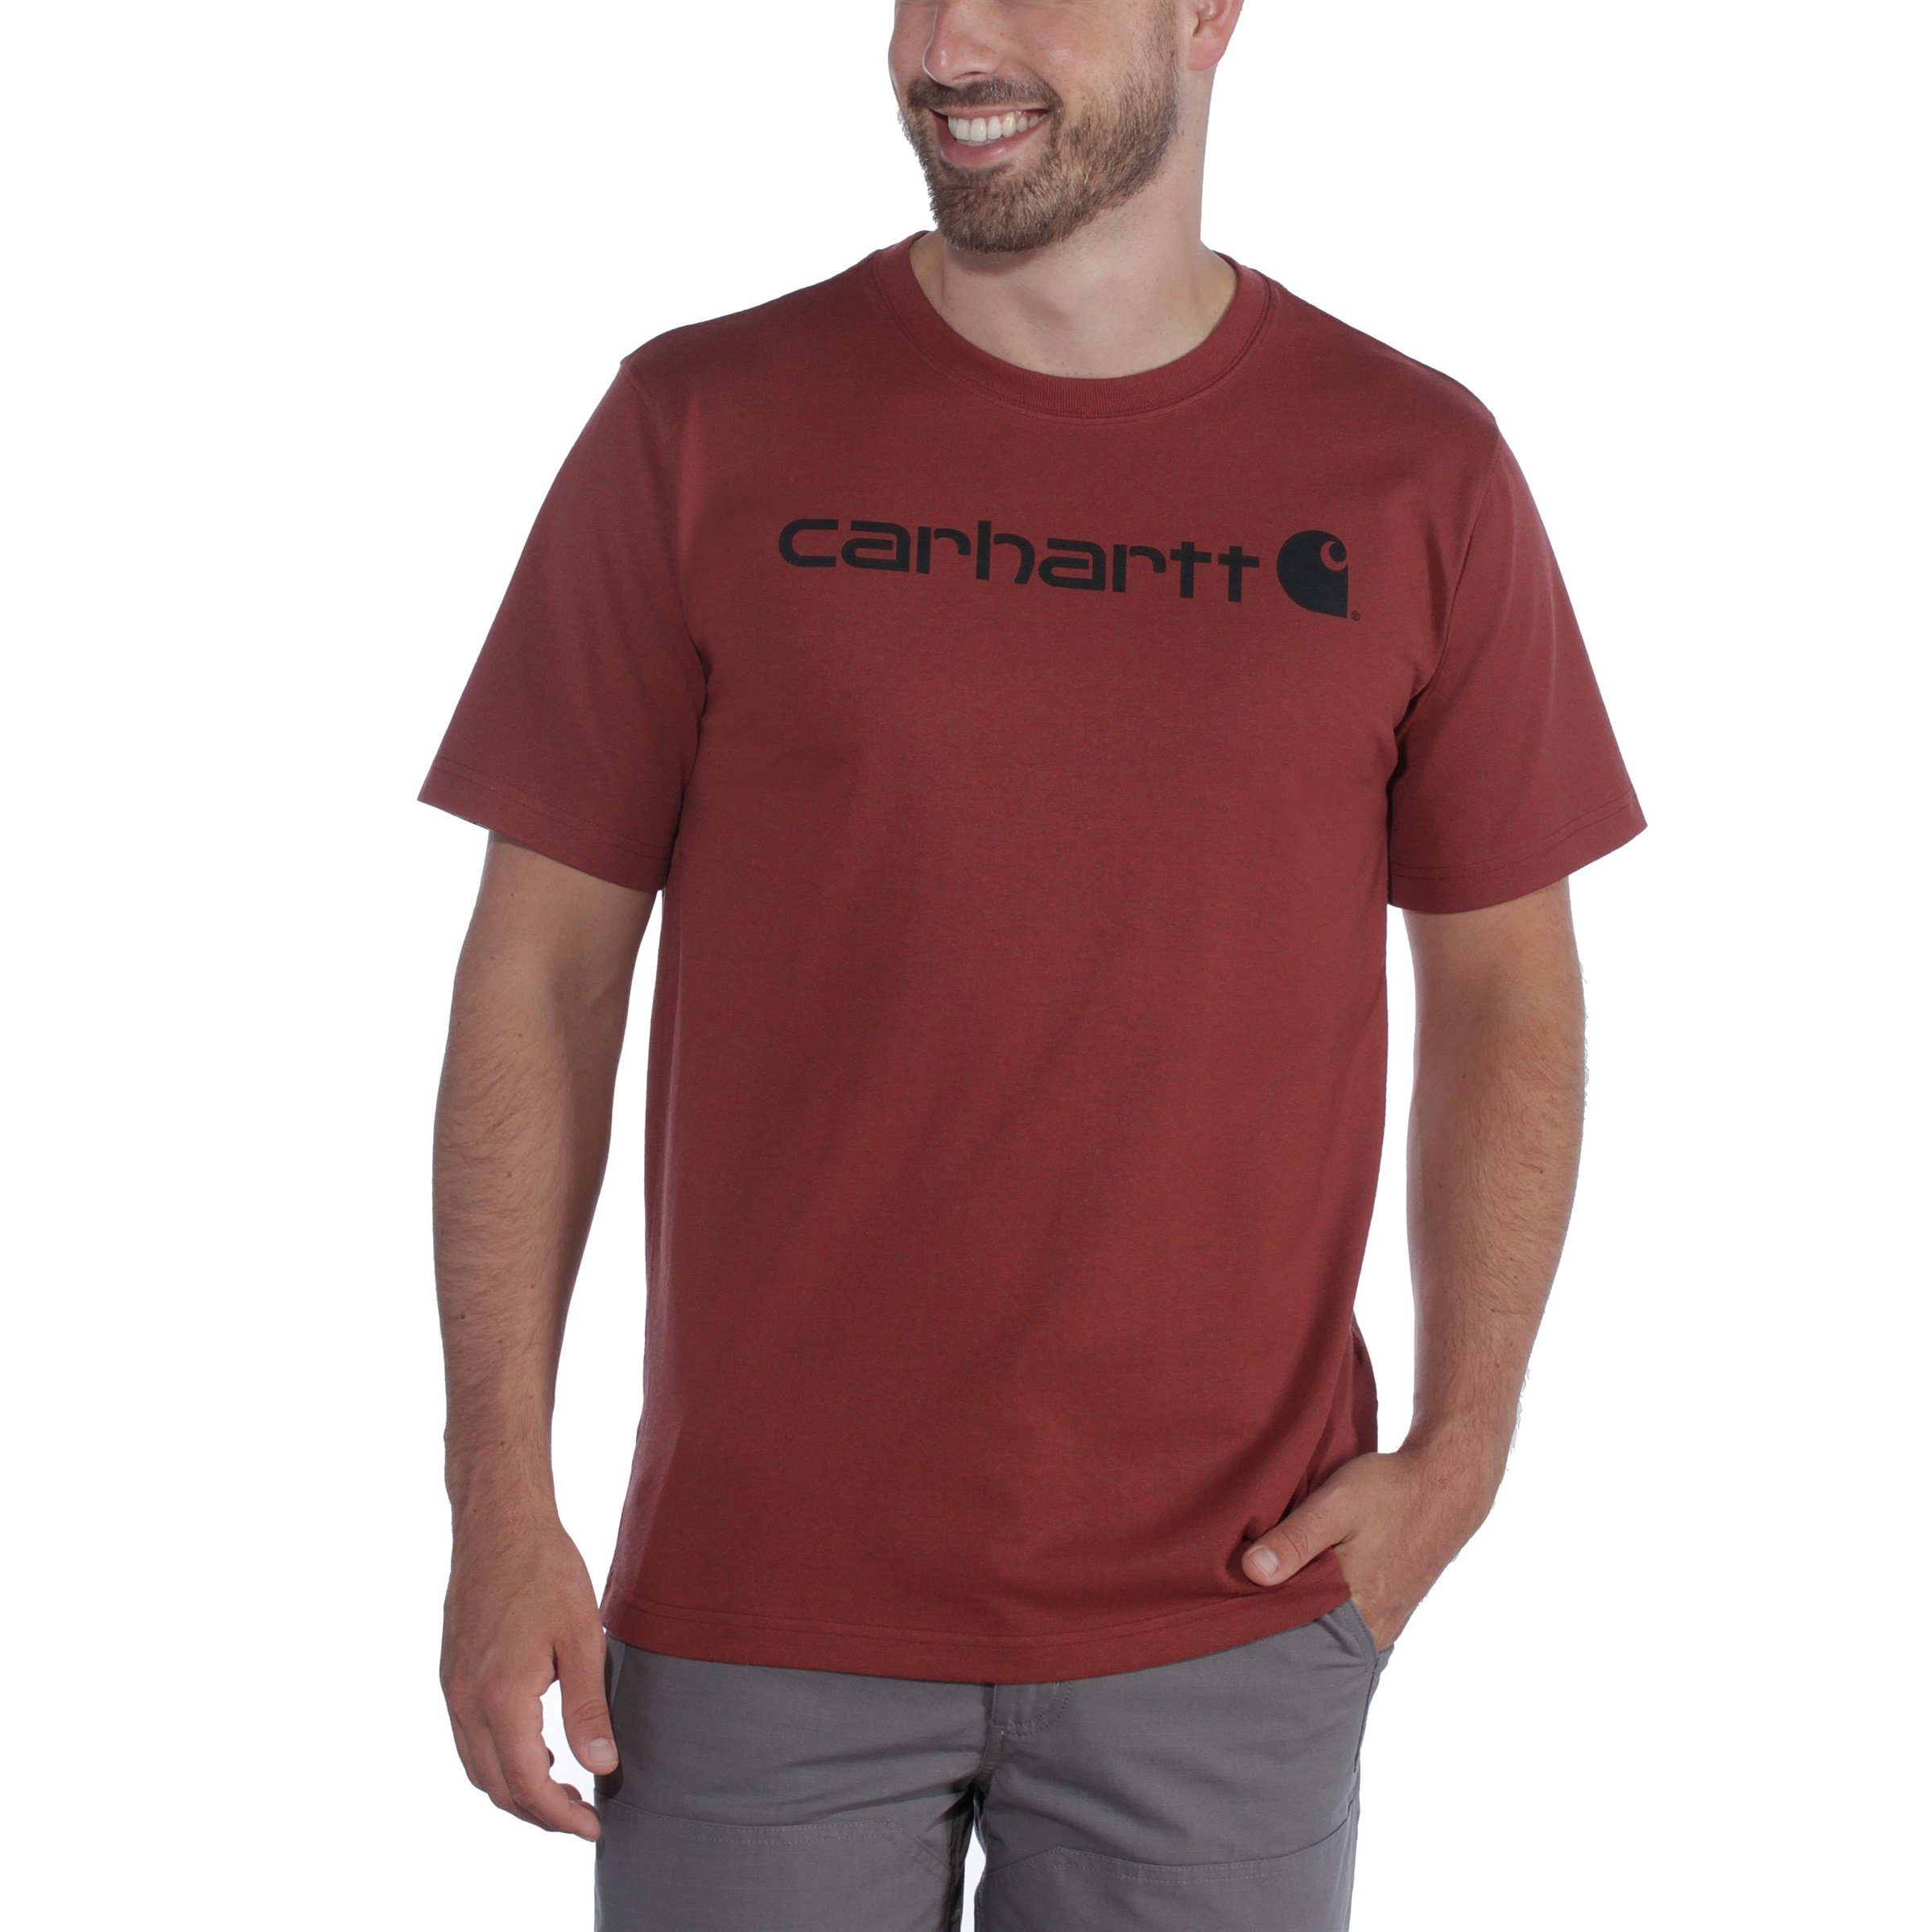 Carhartt T-Shirt Adult T-Shirt Short-Sleeve Fit Heavyweight grey Logo Graphic Carhartt heather Herren Relaxed